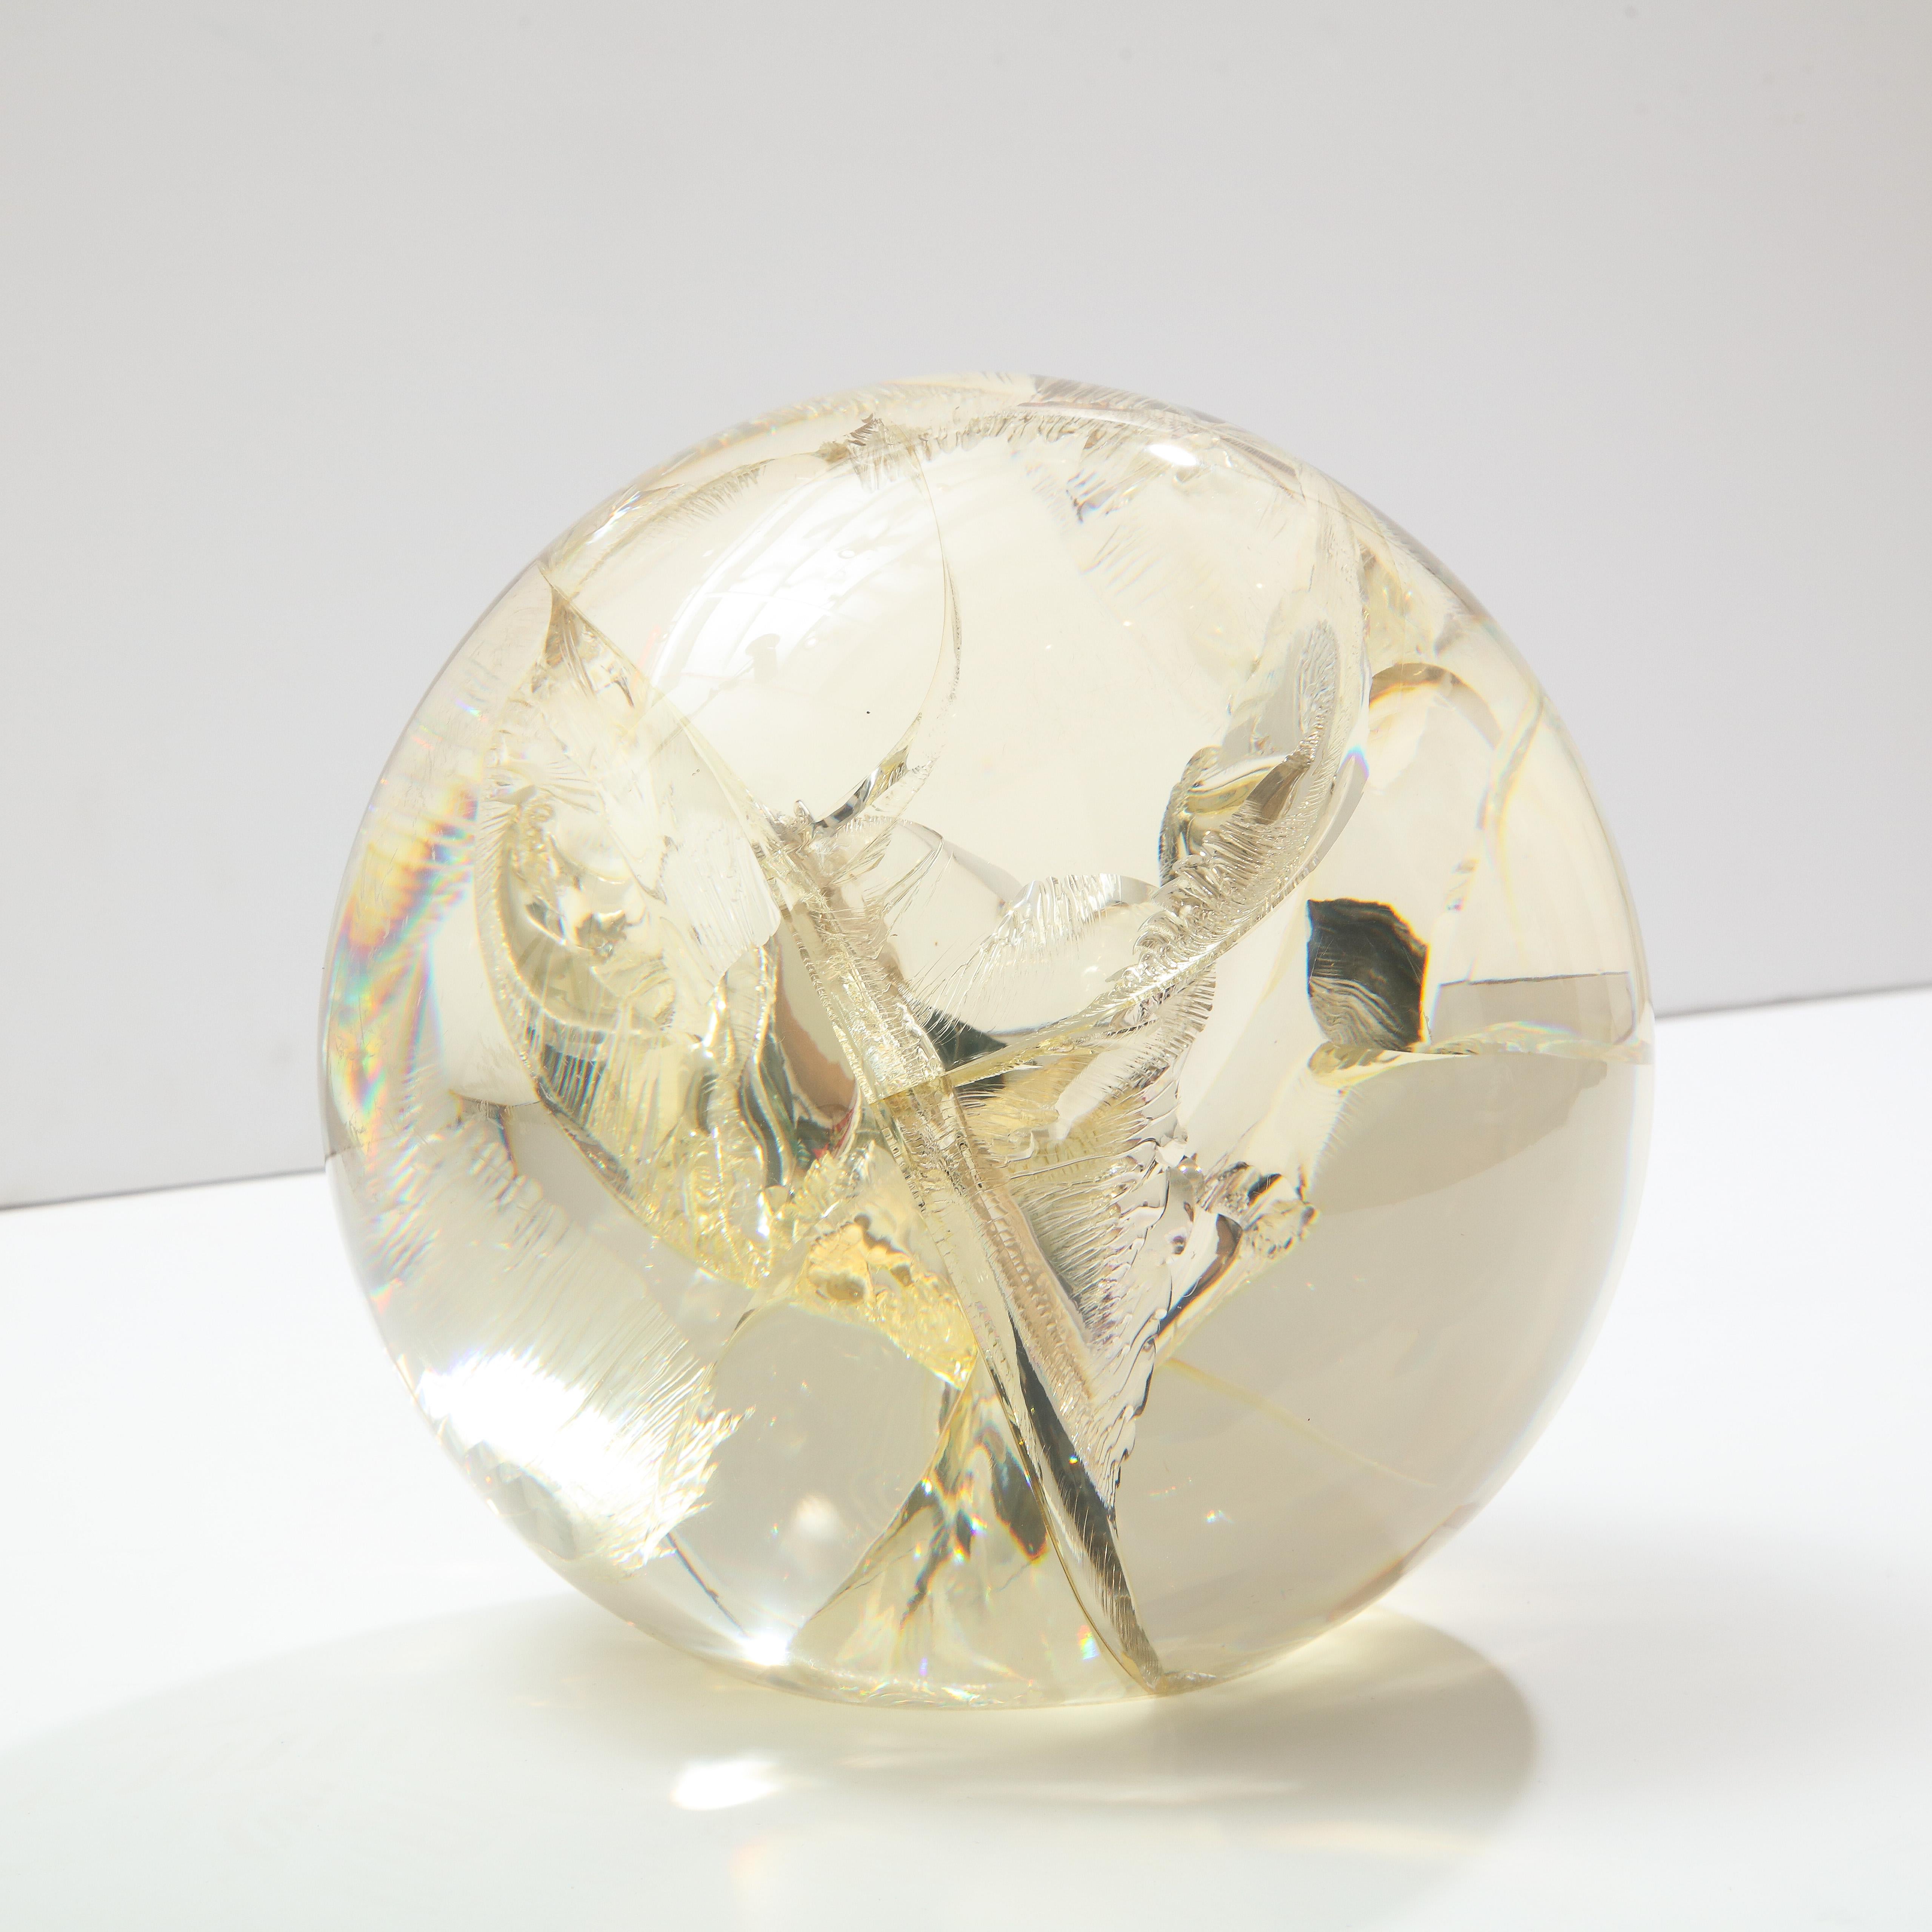 Pierre Giraudon sphère en résine fracturée, sculpture, or clair et jaune. Sculpture acrylique de table de taille moyenne avec des inclusions internes fracturées et colorées avec une teinte jaune d'or. La base de la sphère est plate pour une